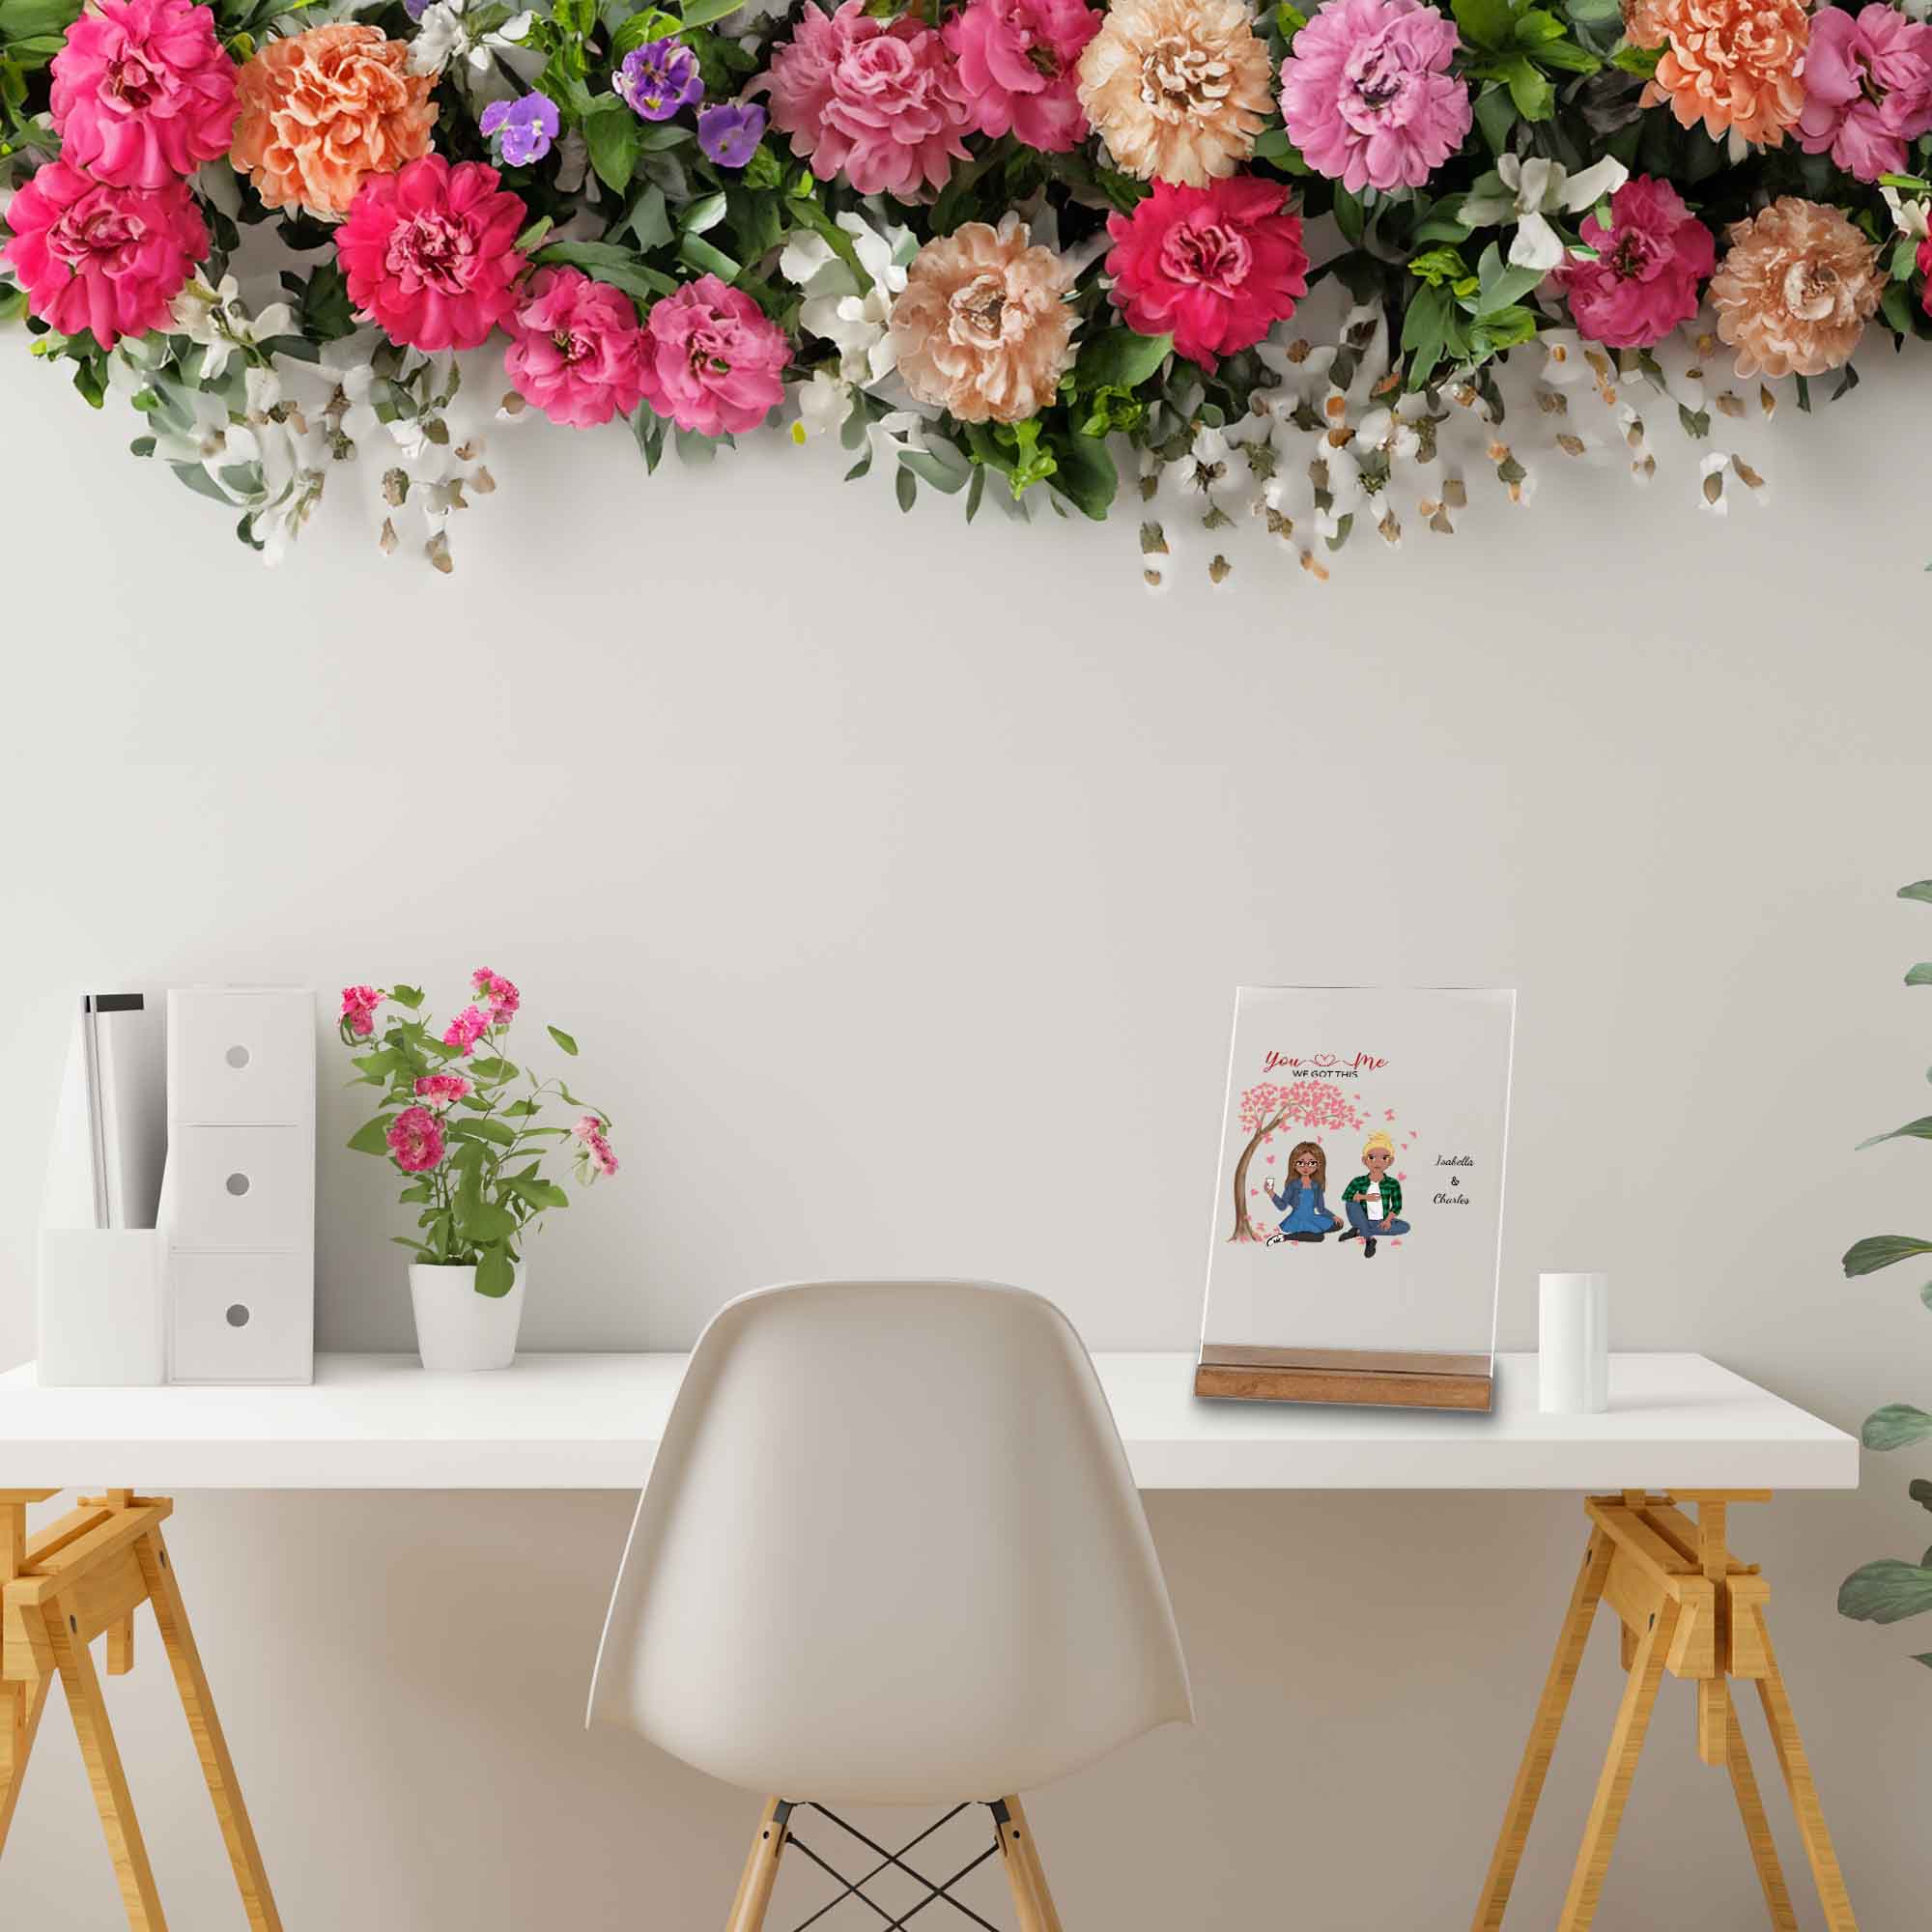 Geschenk fuer Partner-Dekoration auf dem Schreibtisch-mit Blumenkranz